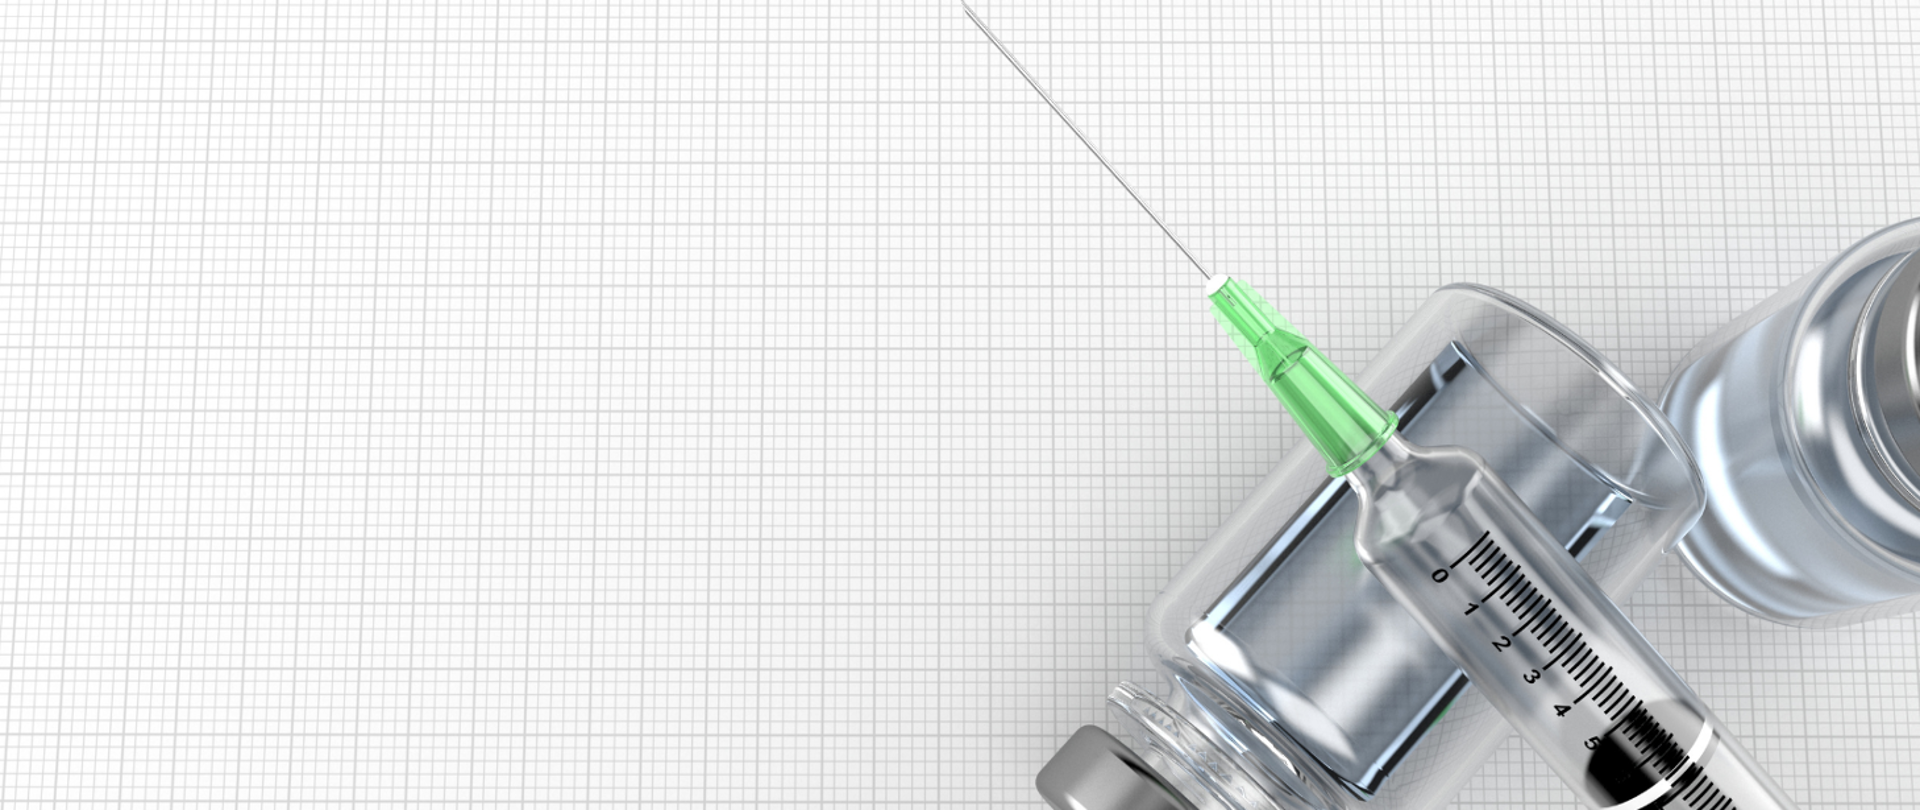 strzykawka a w tle pojemniczek ze szczepionką